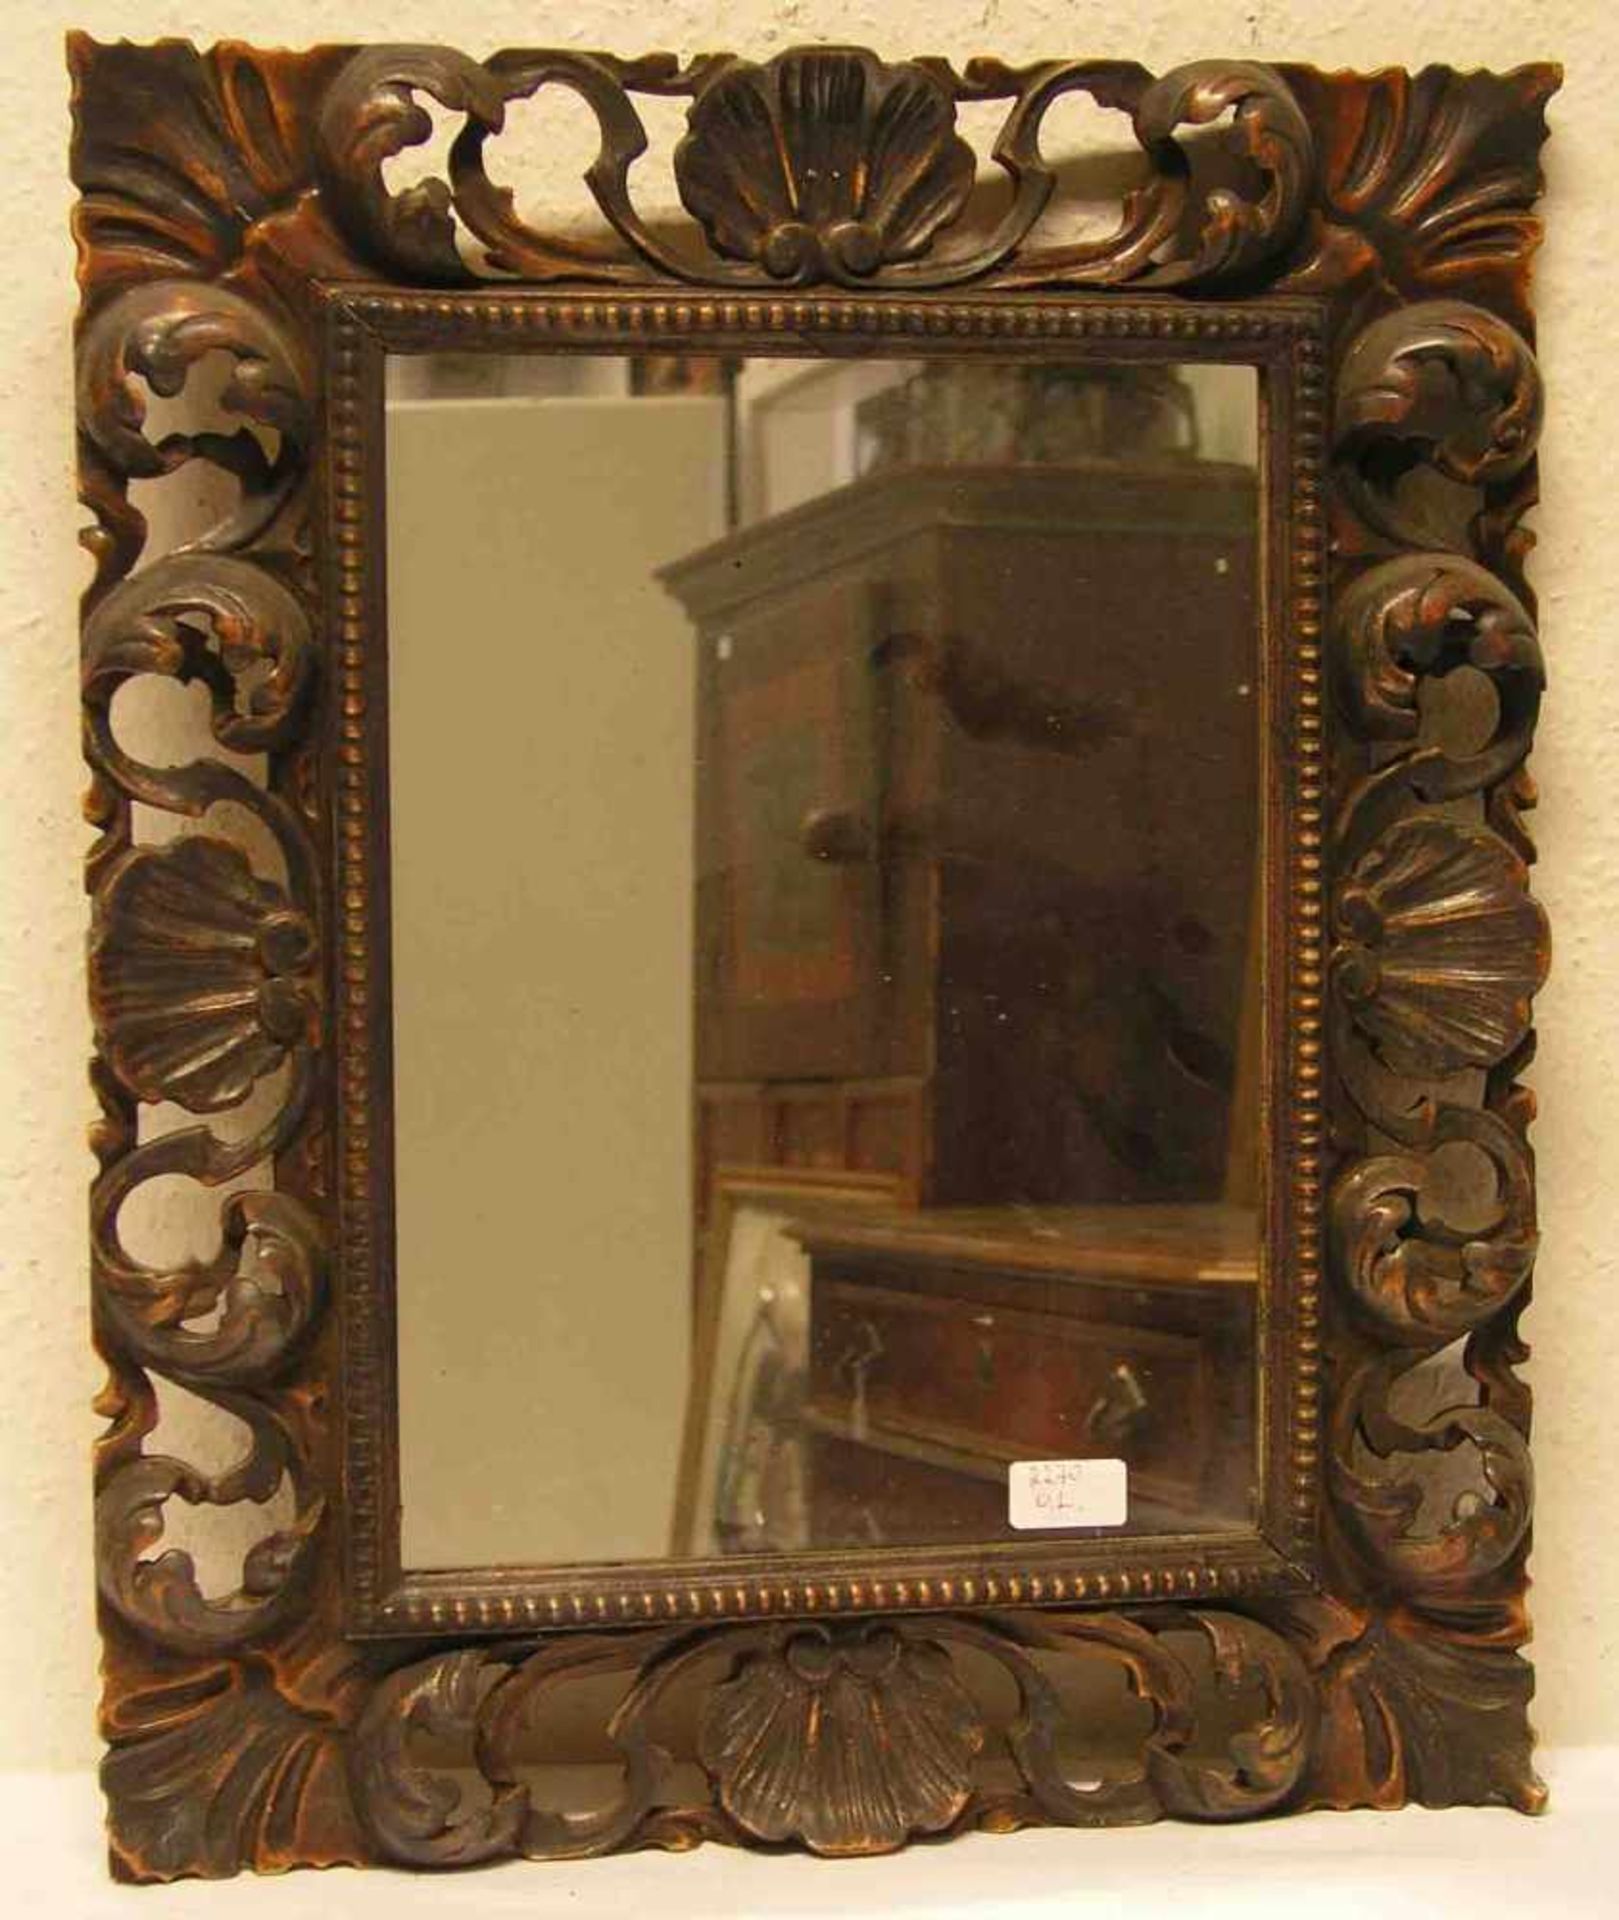 Spiegel im geschnitzten Holzrahmen. Gesamtmaße: 56 x 47cm.